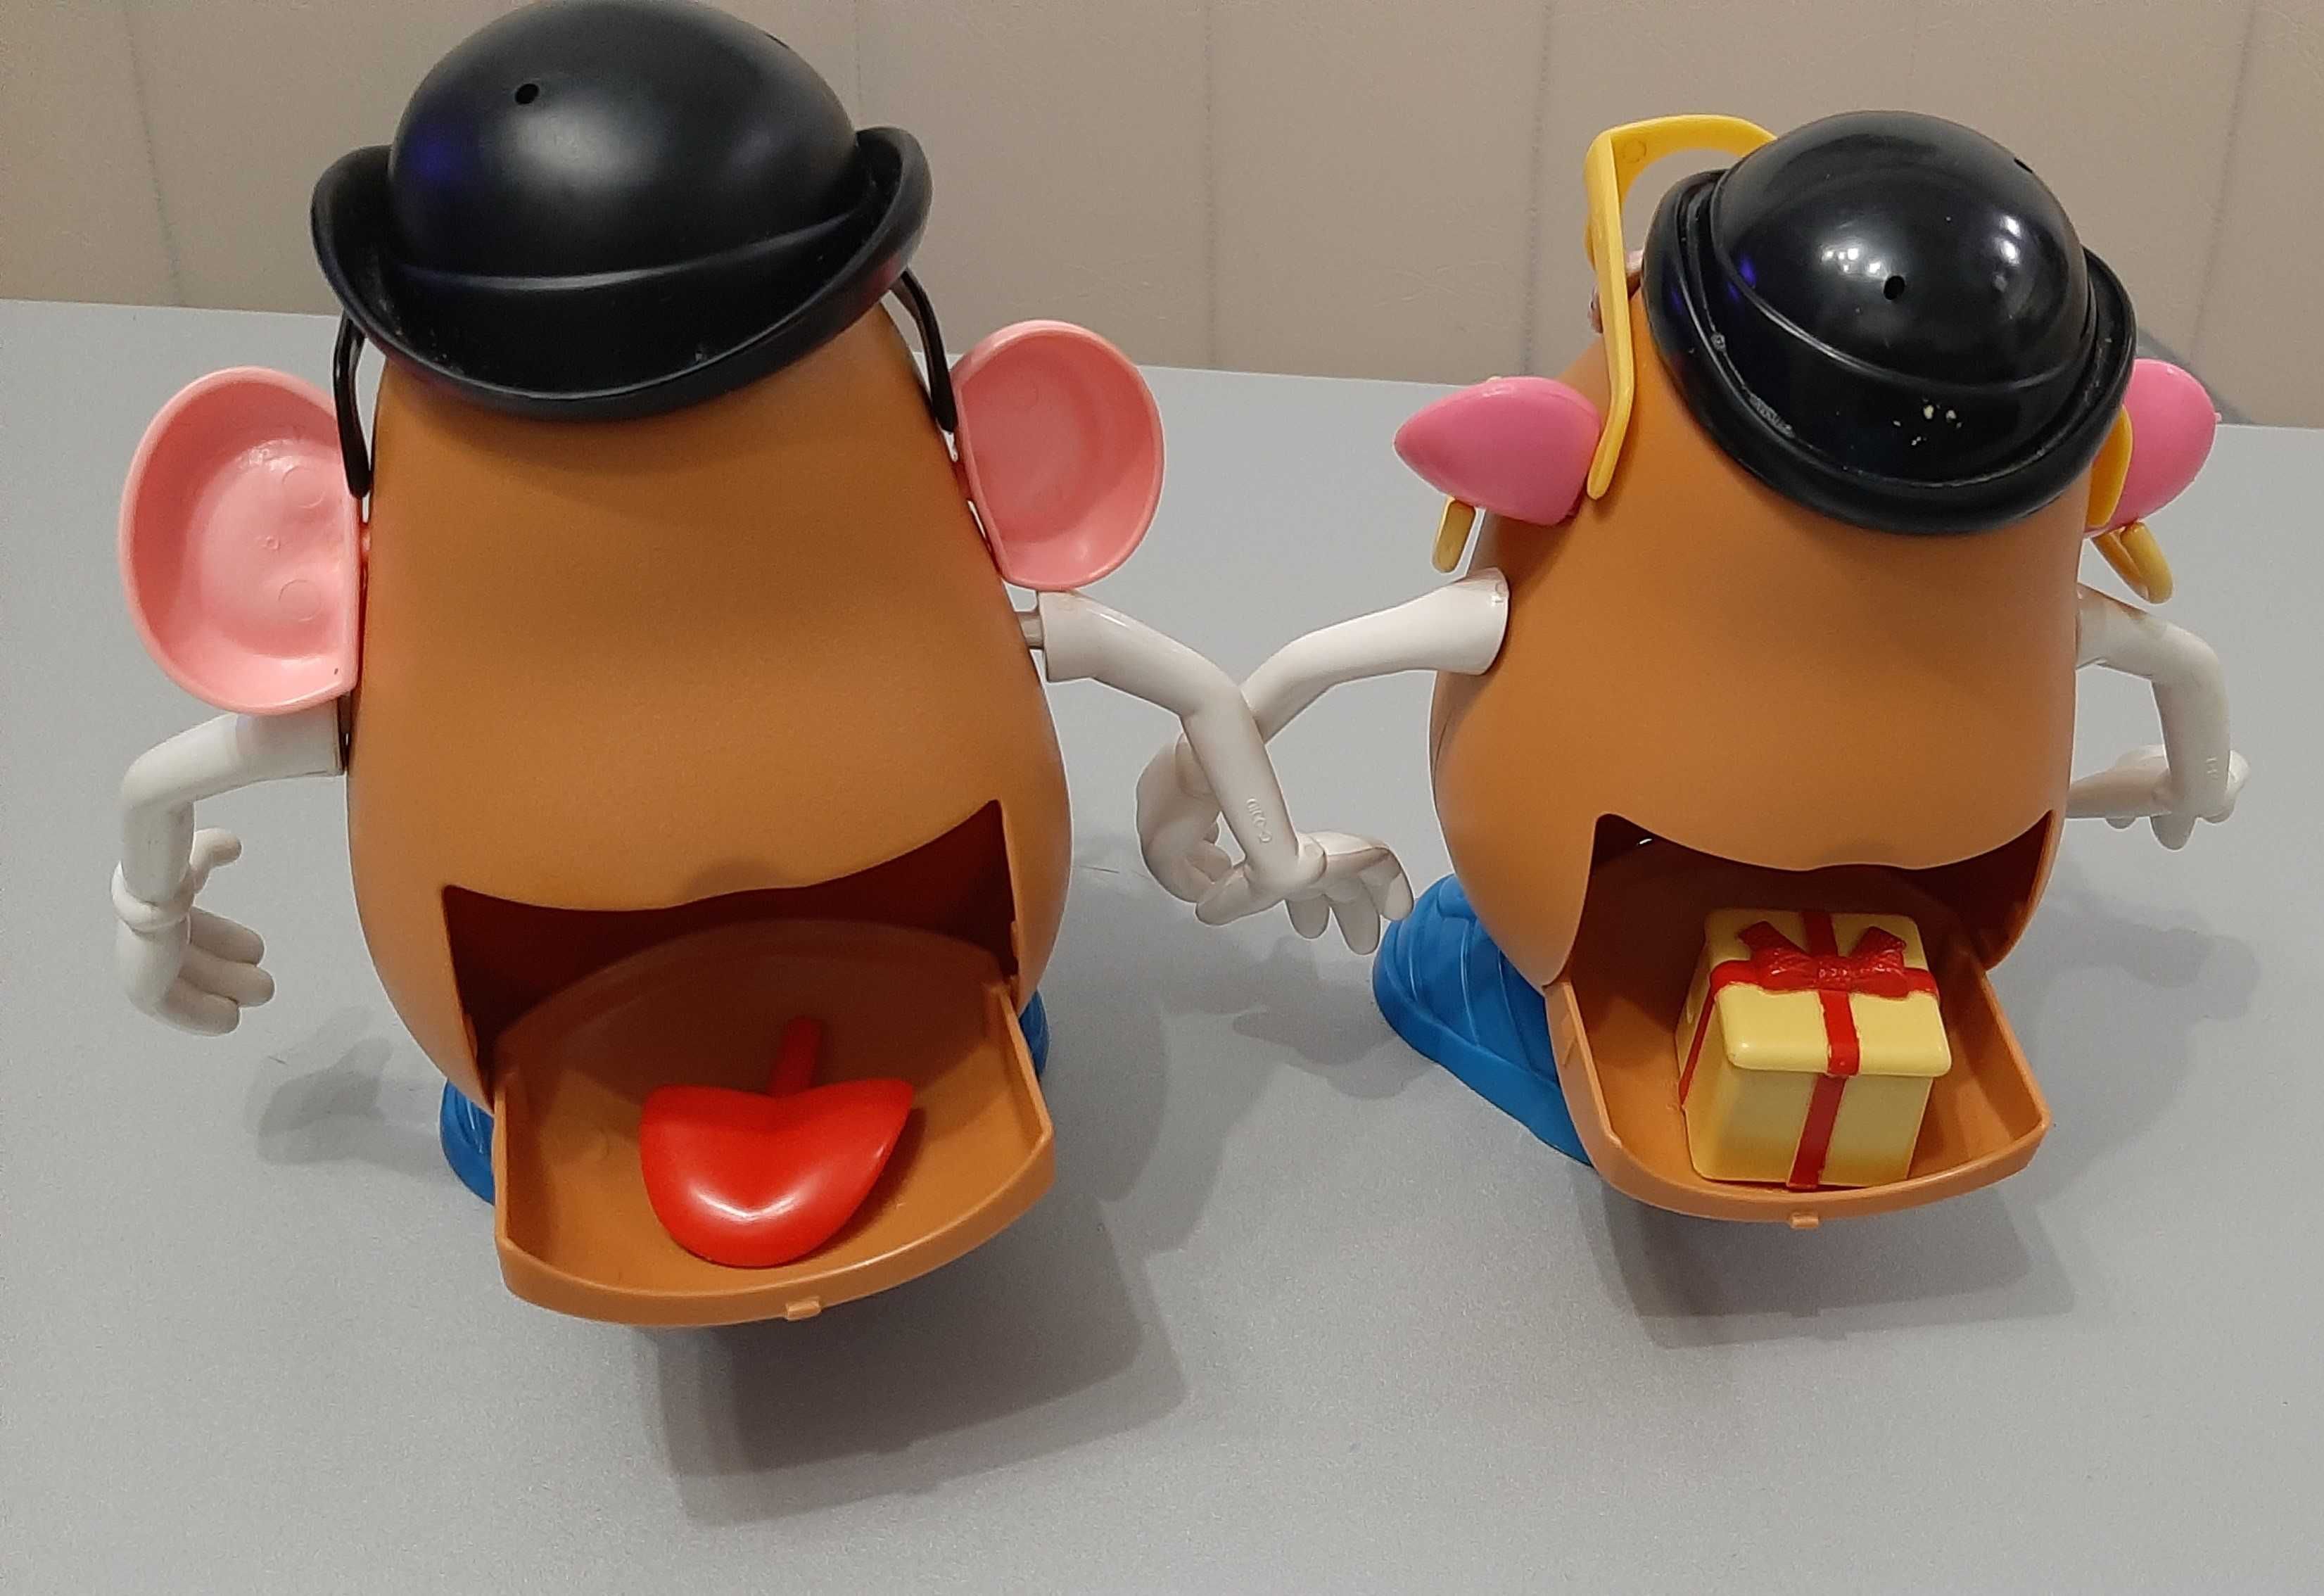 Domnul și Doamna Cartof – set creativ de joacă